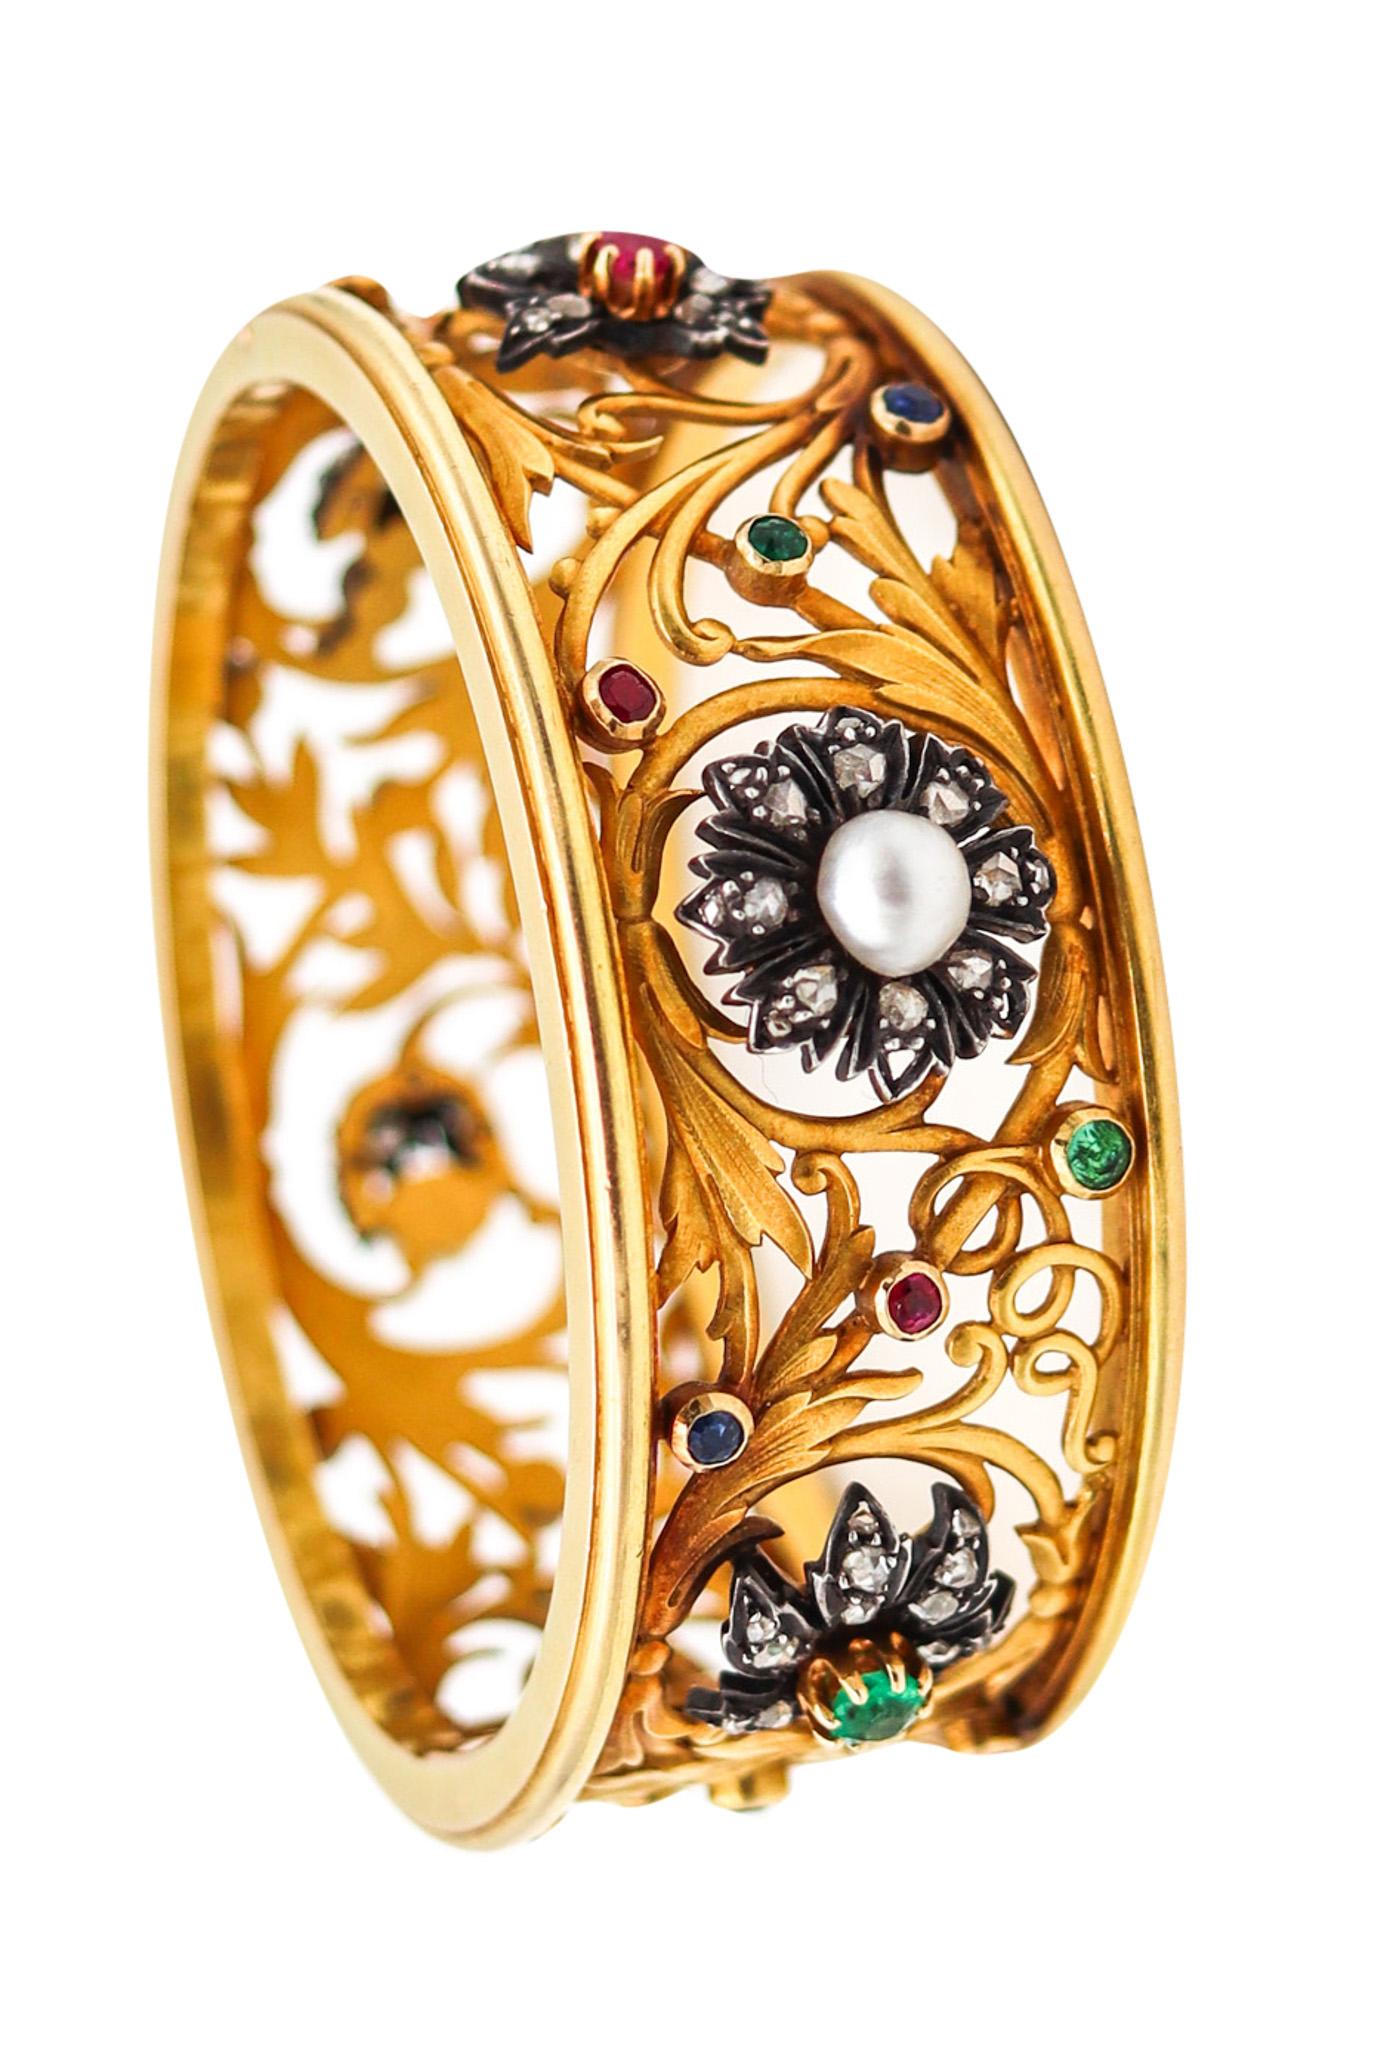 Bracelet jonc Art nouveau français de 1890 en or jaune 18 carats avec pierres précieuses